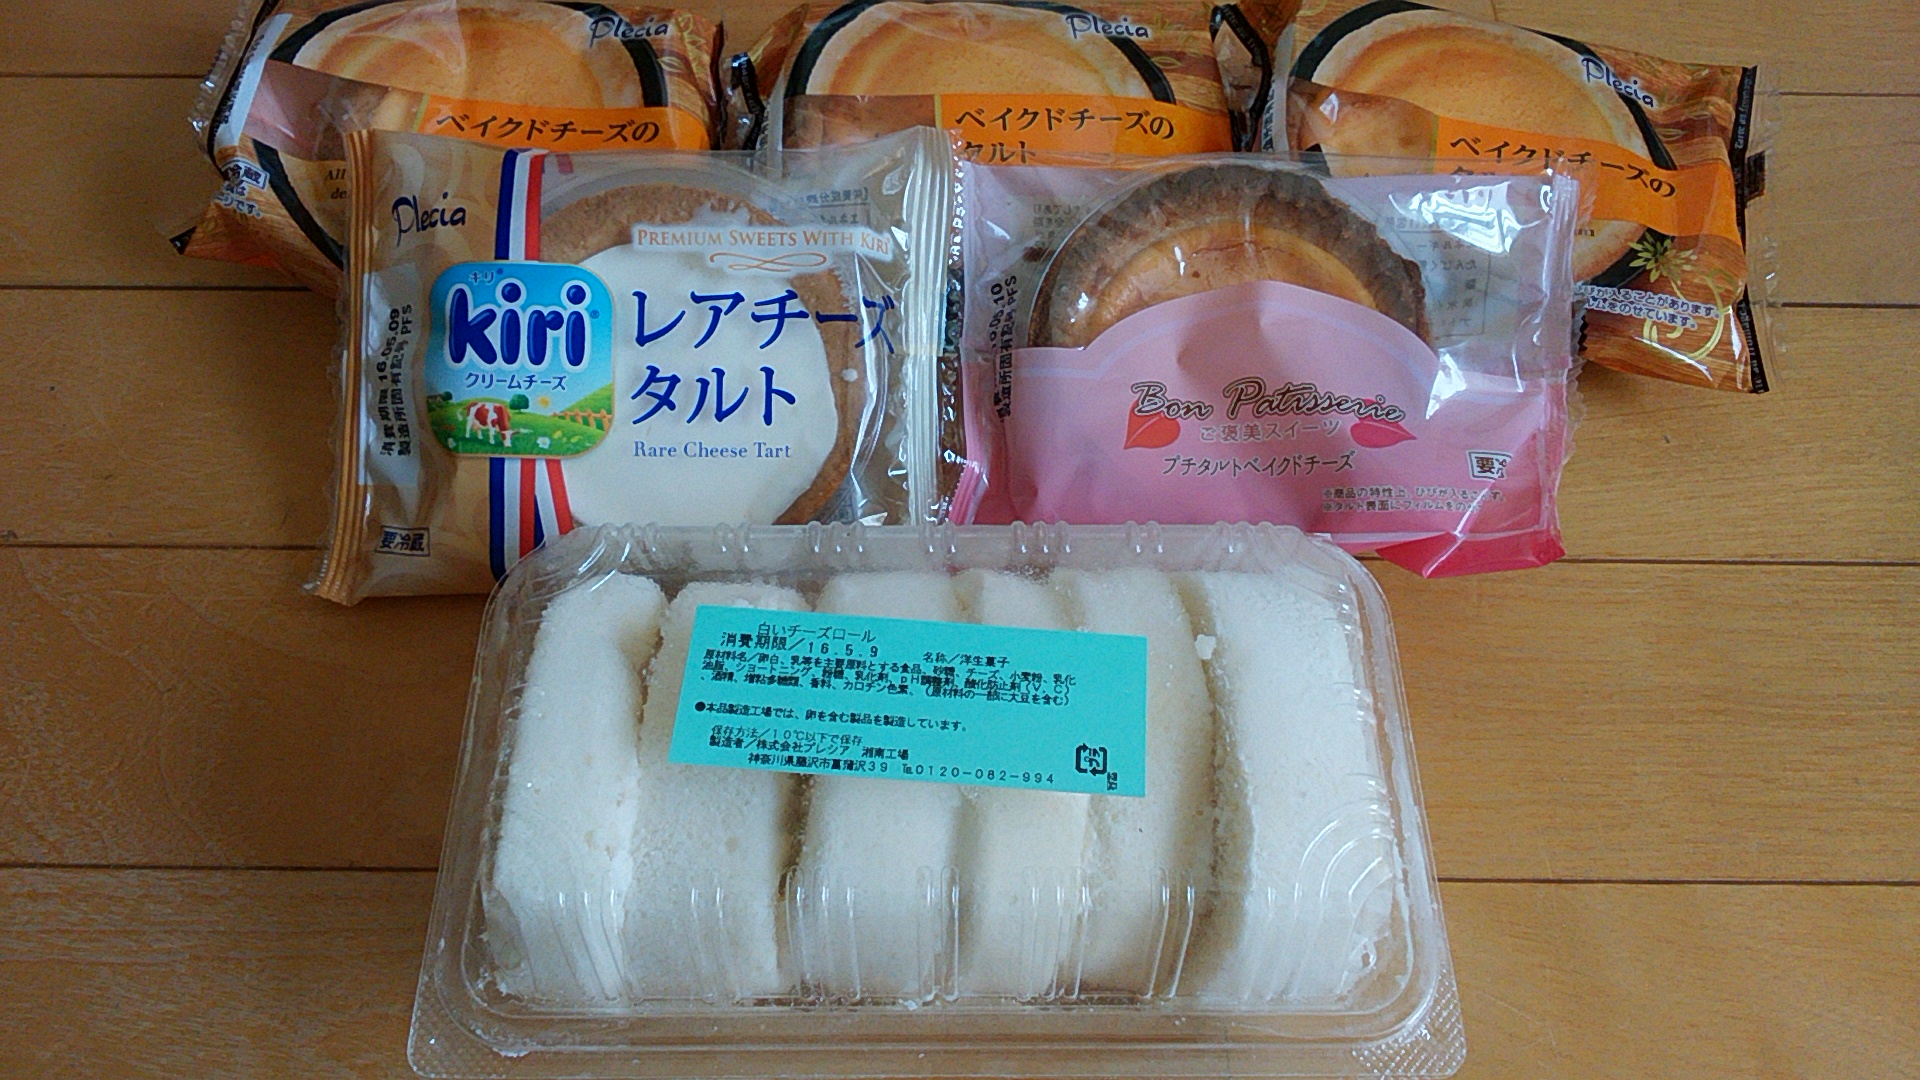 タルト5個で200円,白いチーズロール100円